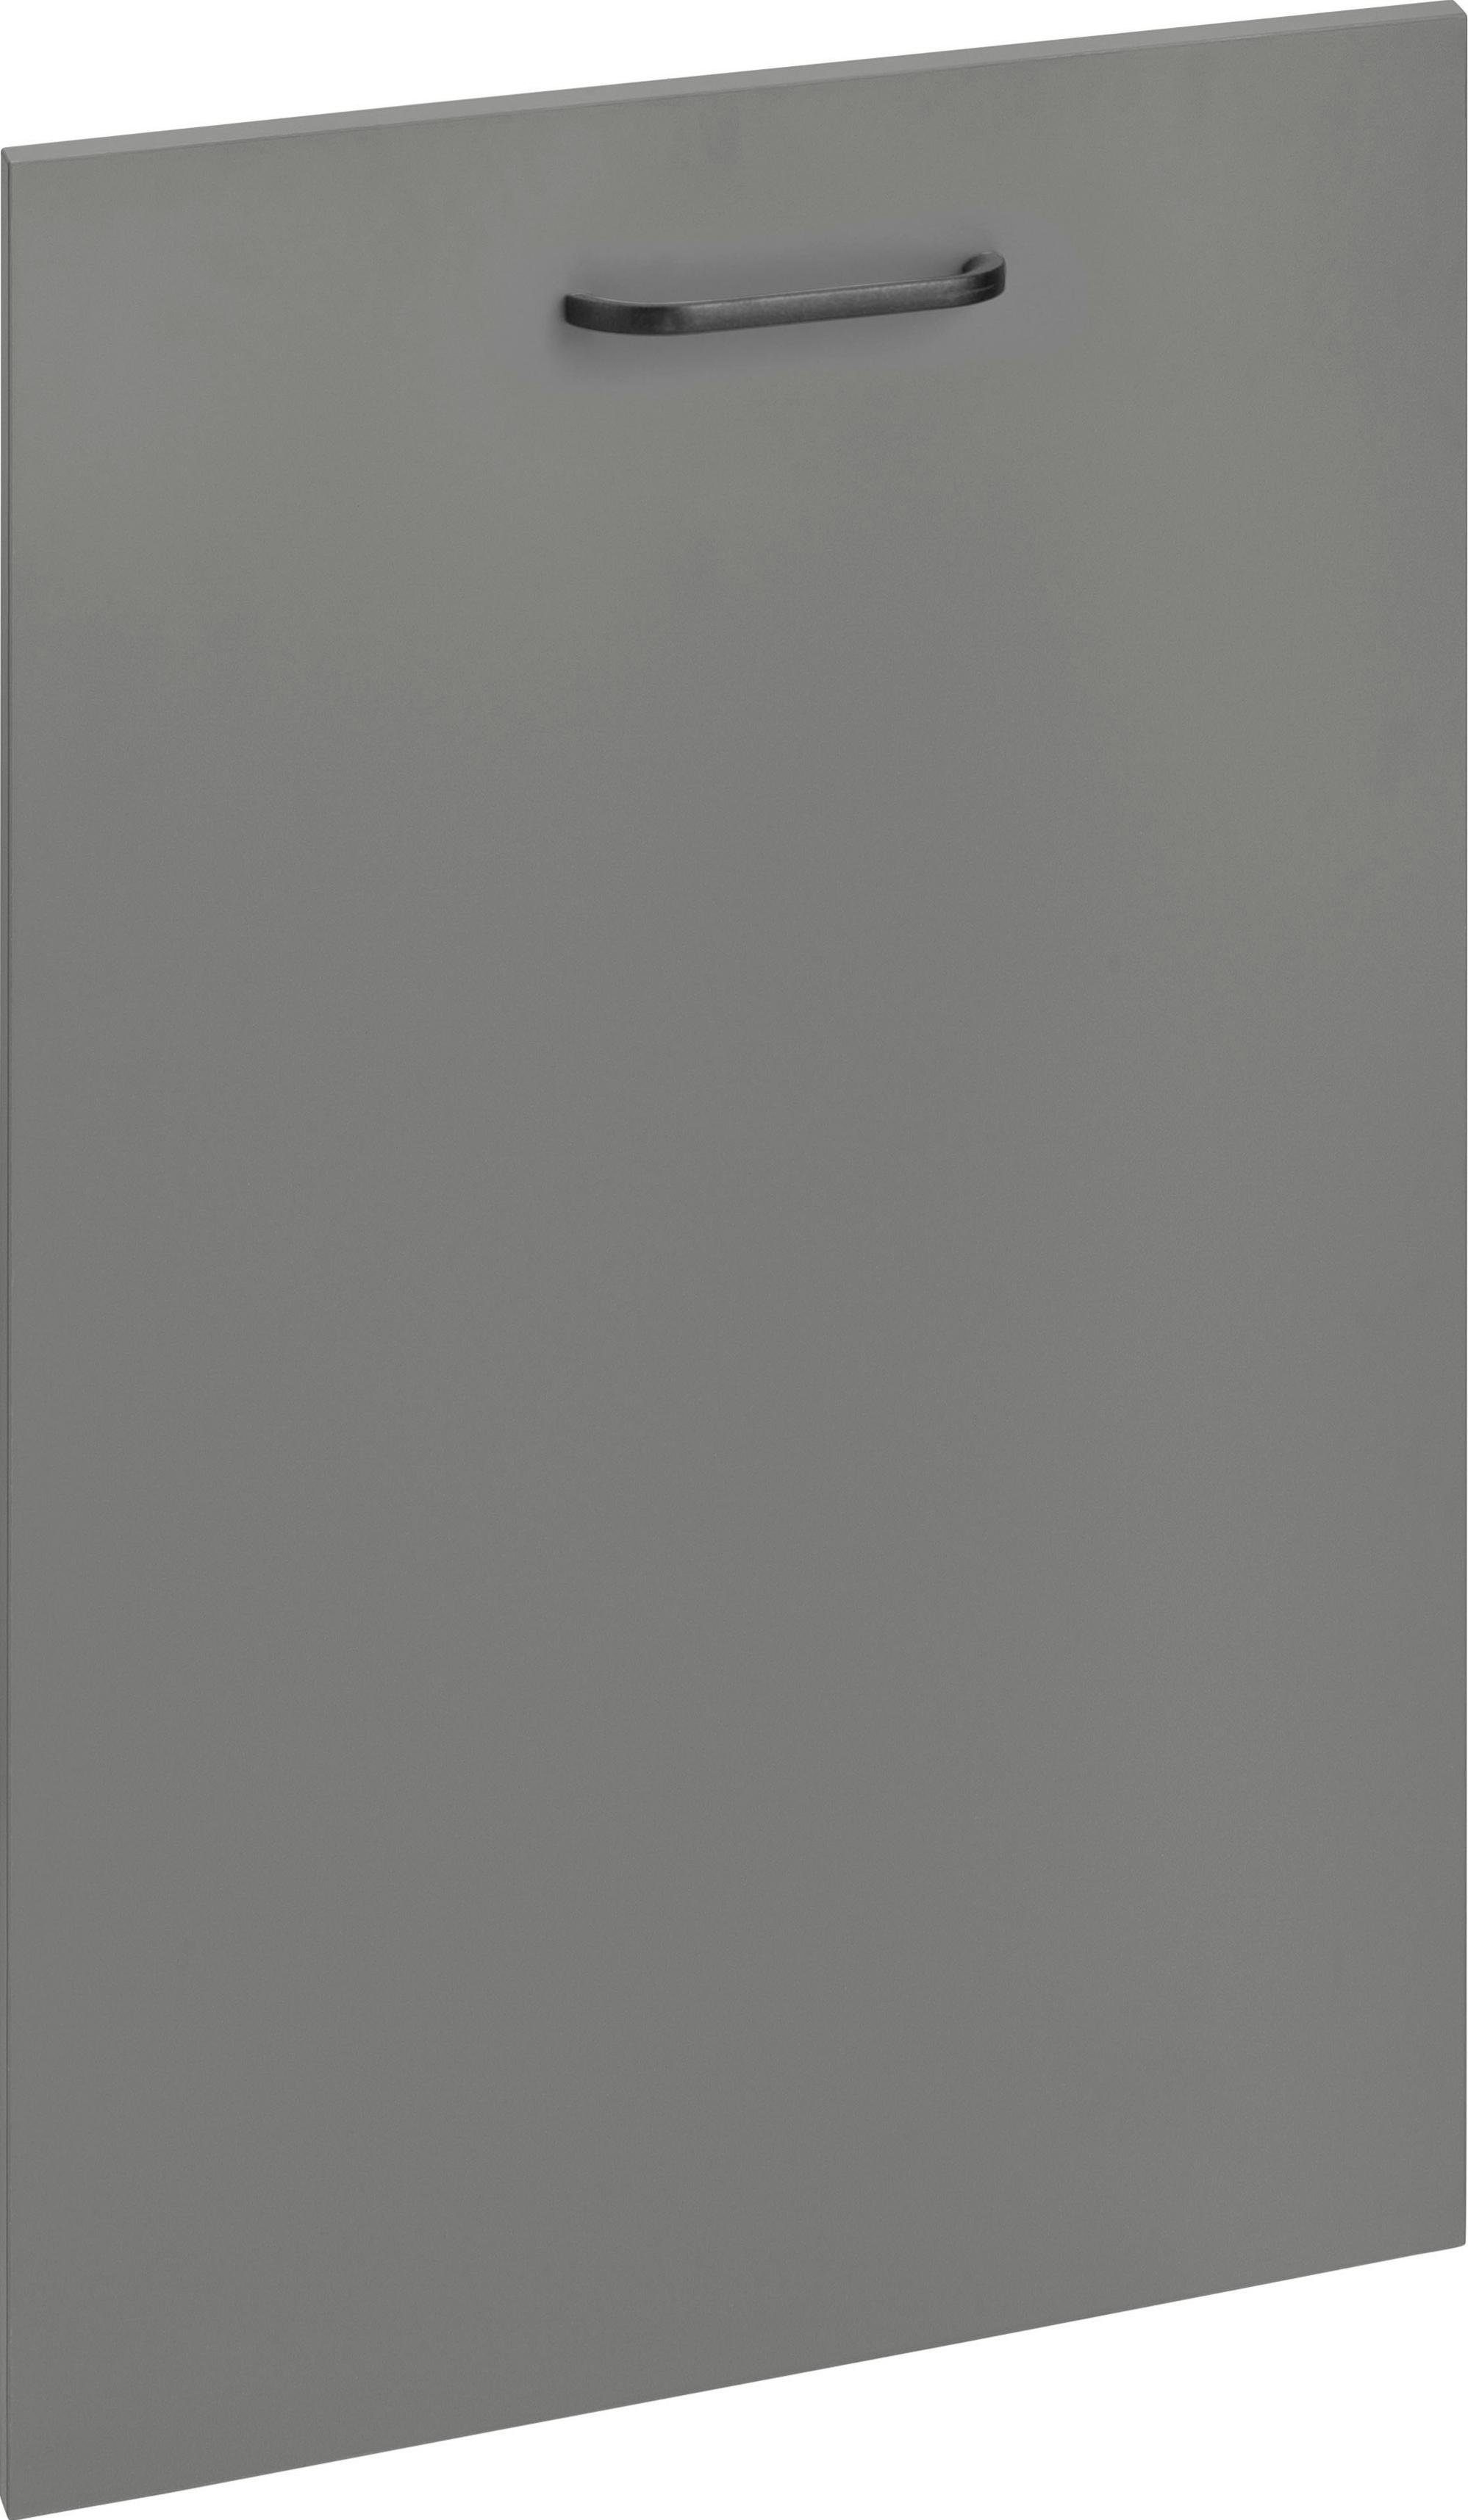 OPTIFIT Frontblende Elga, für vollintegrierbaren Geschirrspüler, Breite 45 cm basaltgrau/basaltgrau